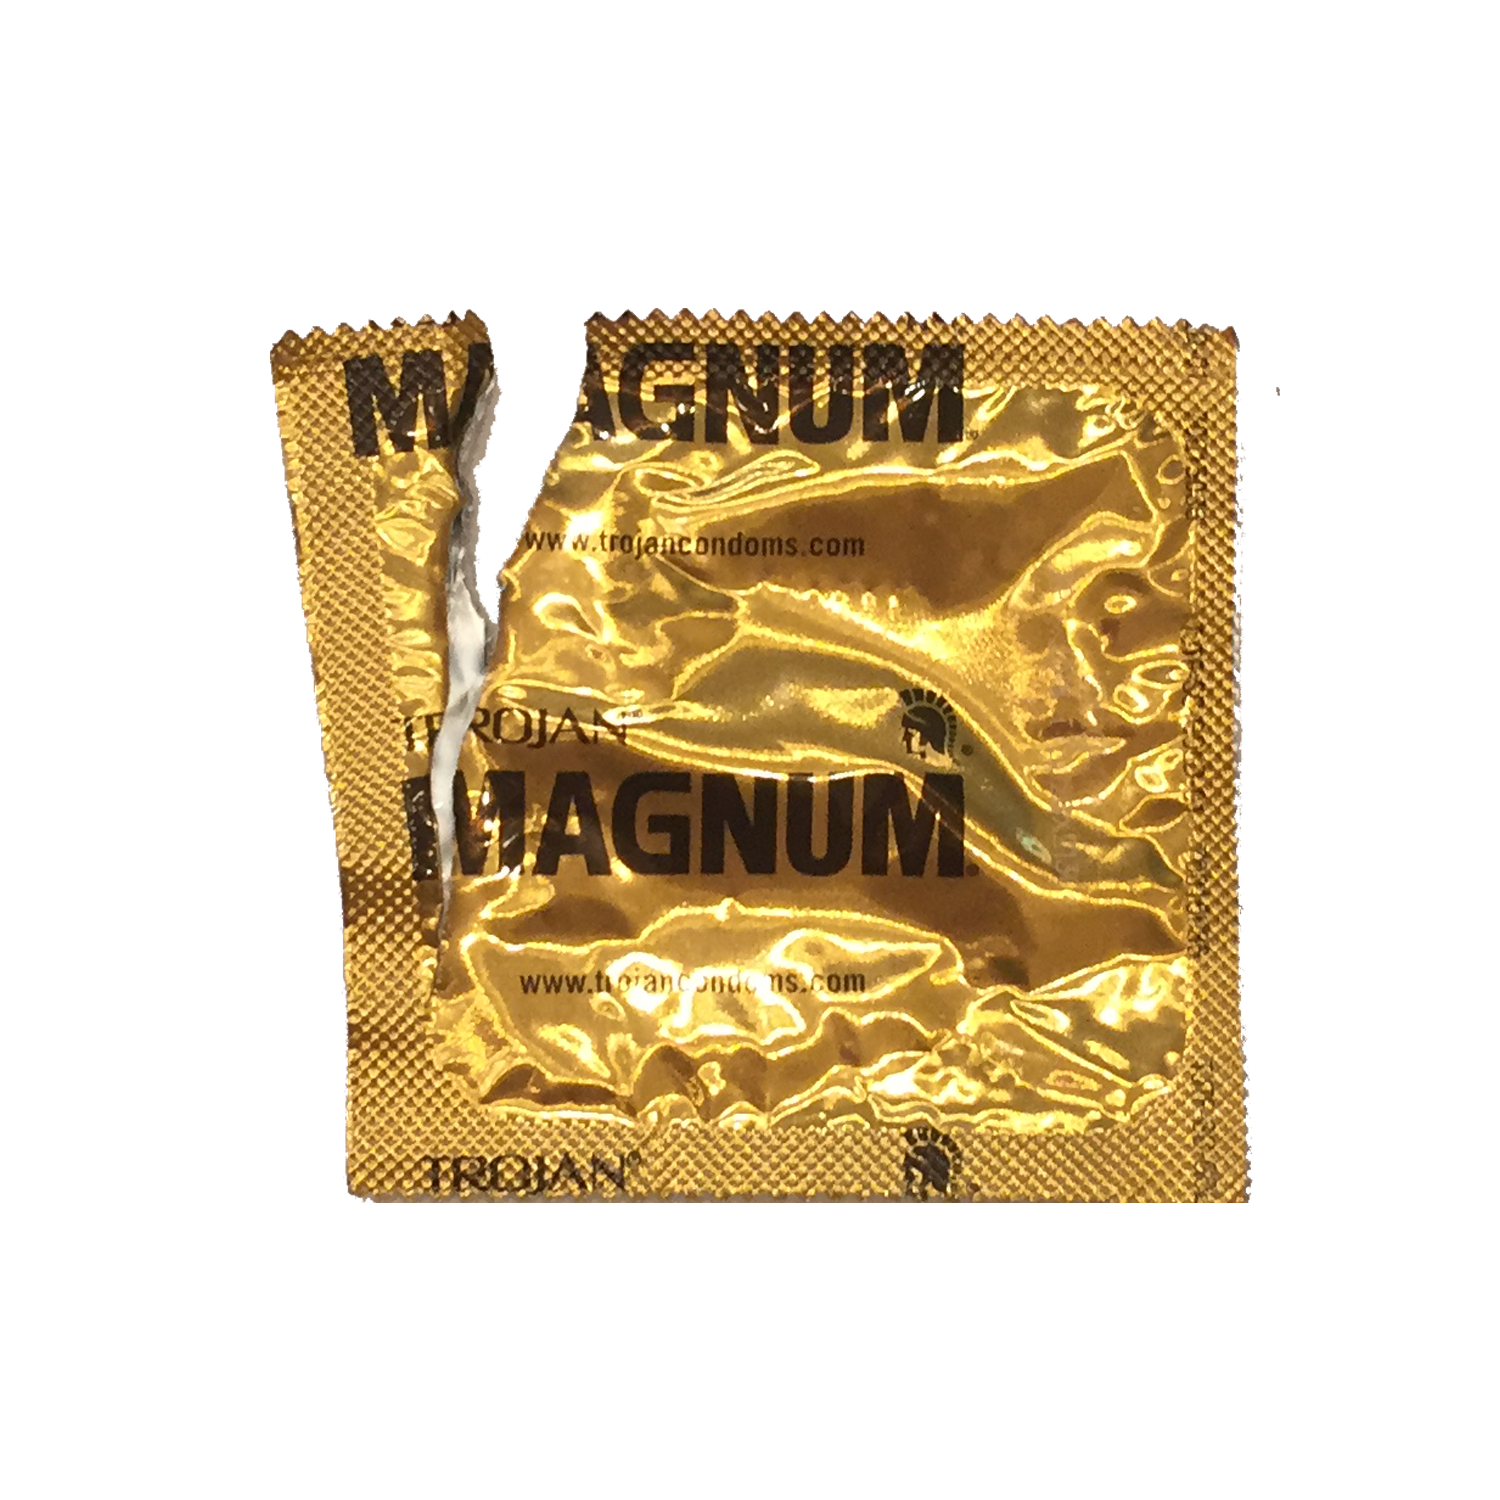 Used Magnum Condom Wrapper